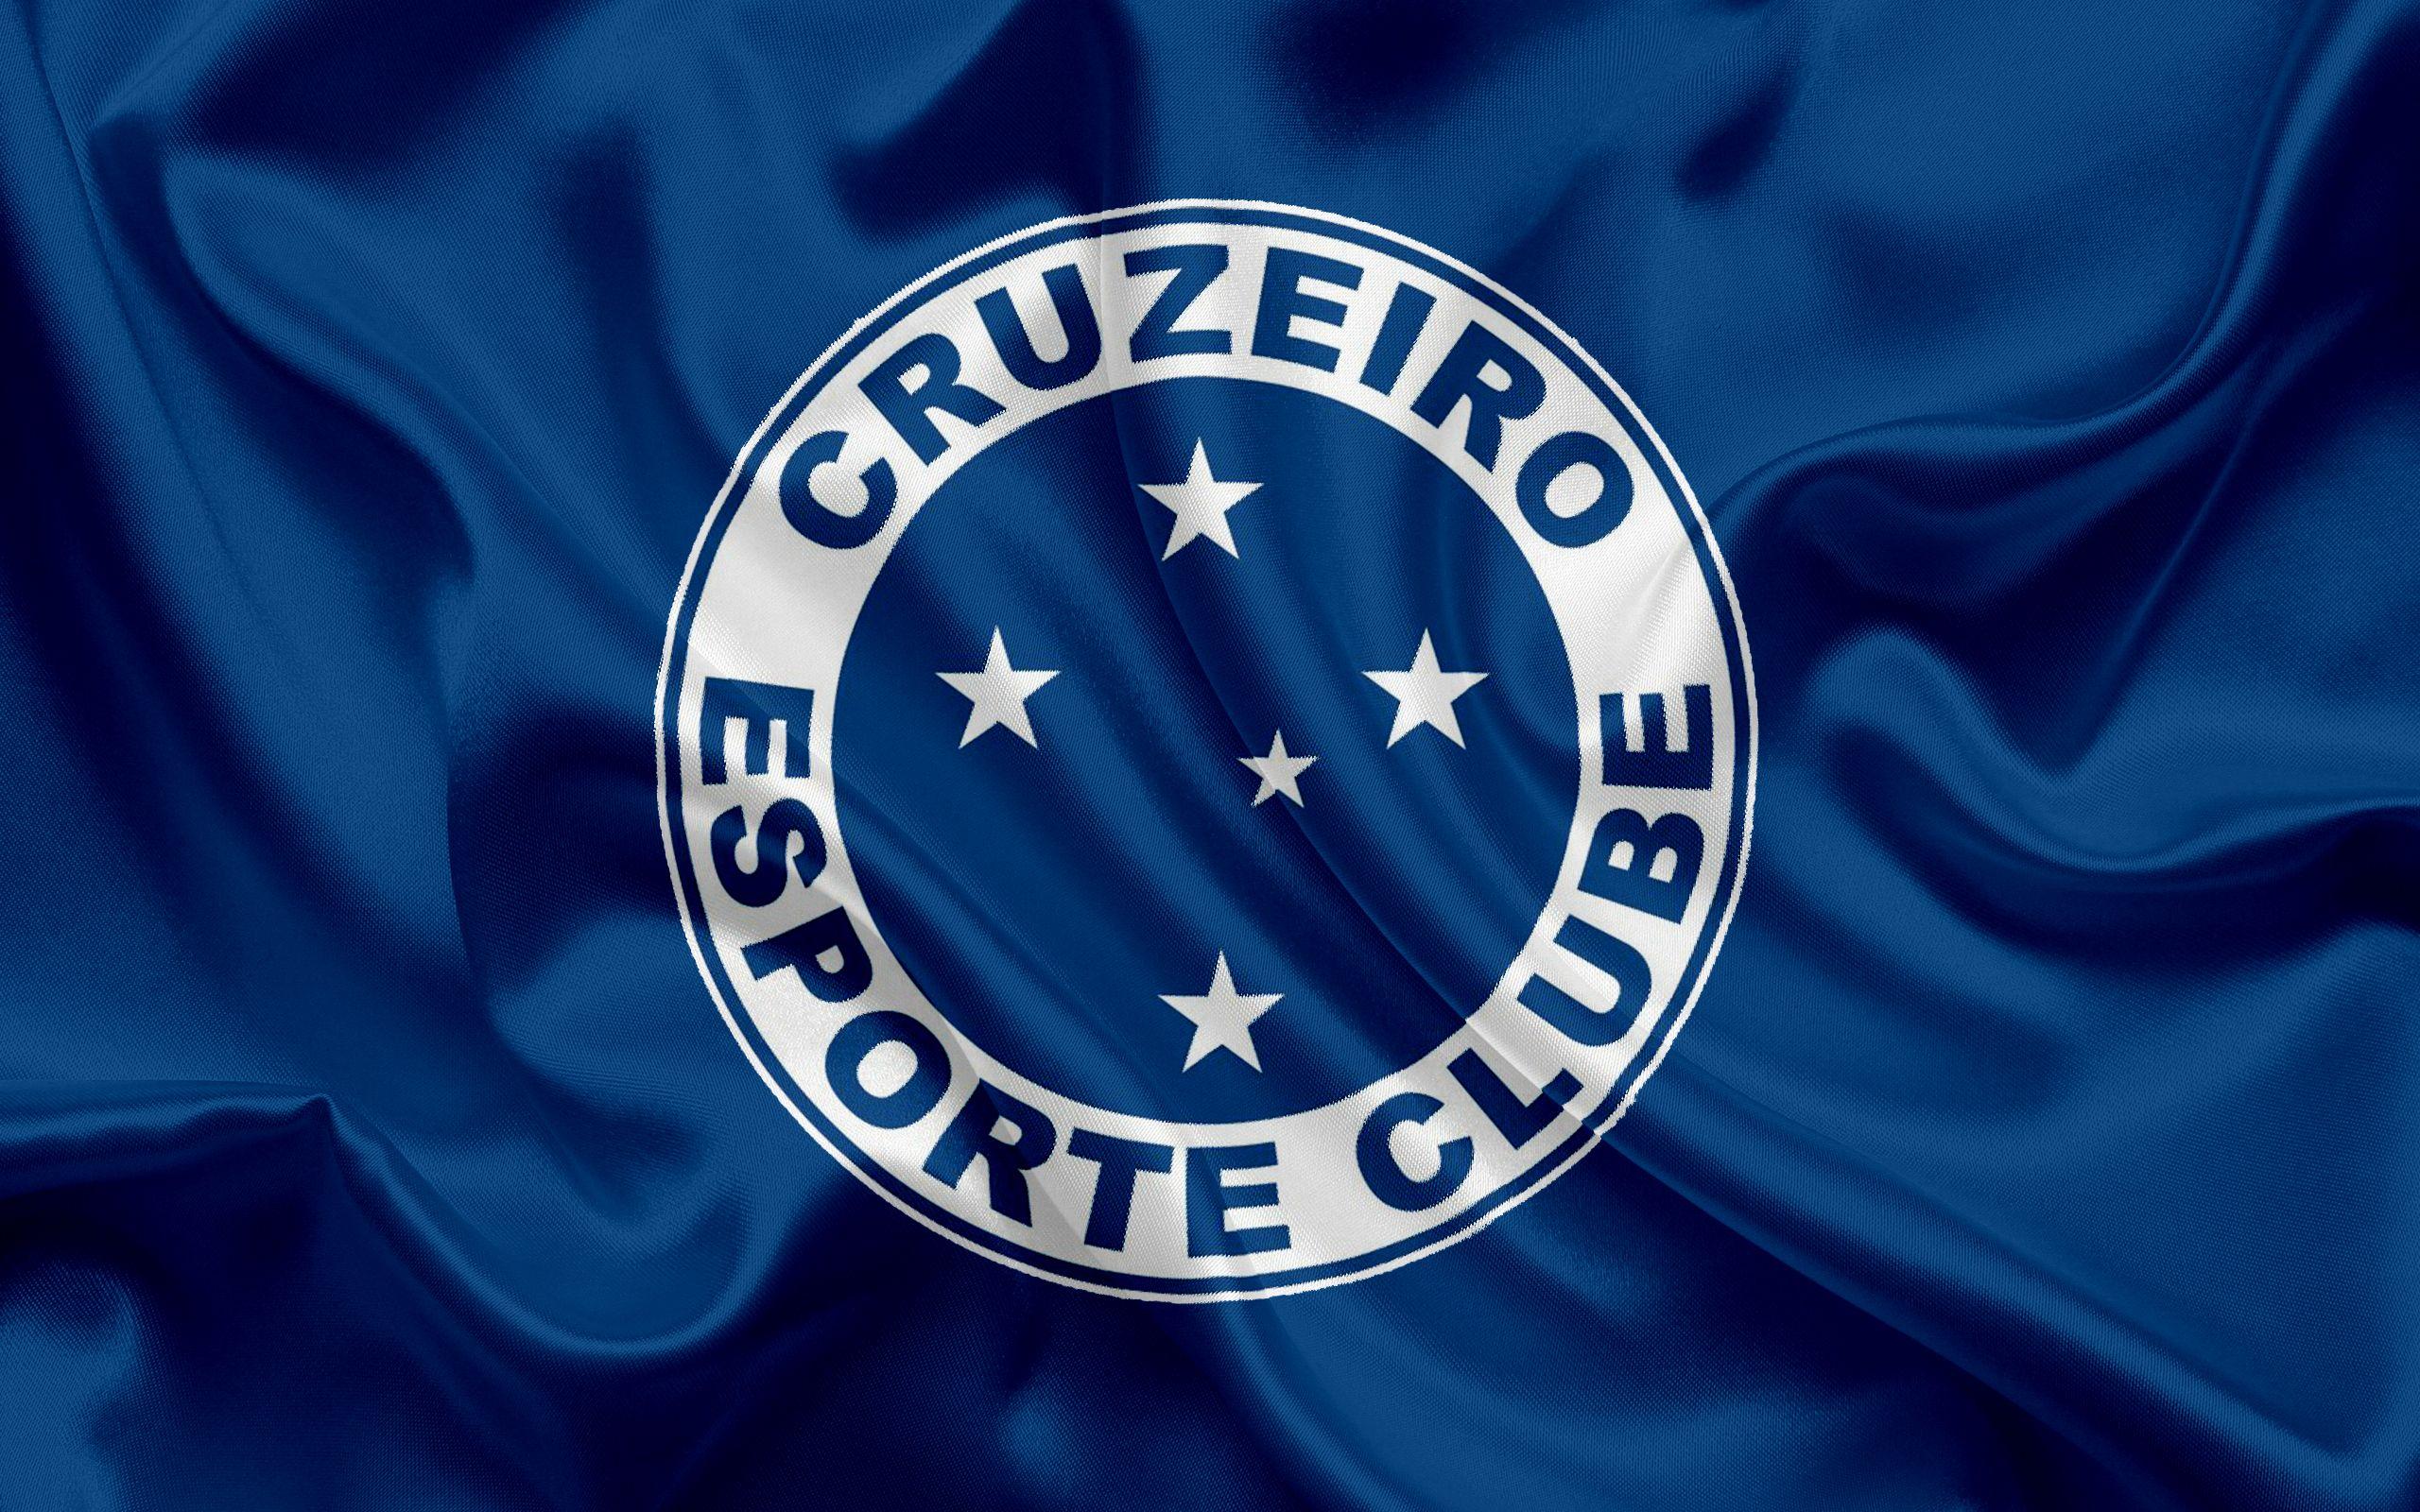 Cruzeiro Esporte Clube Wallpapers - Top Free Cruzeiro Esporte Clube